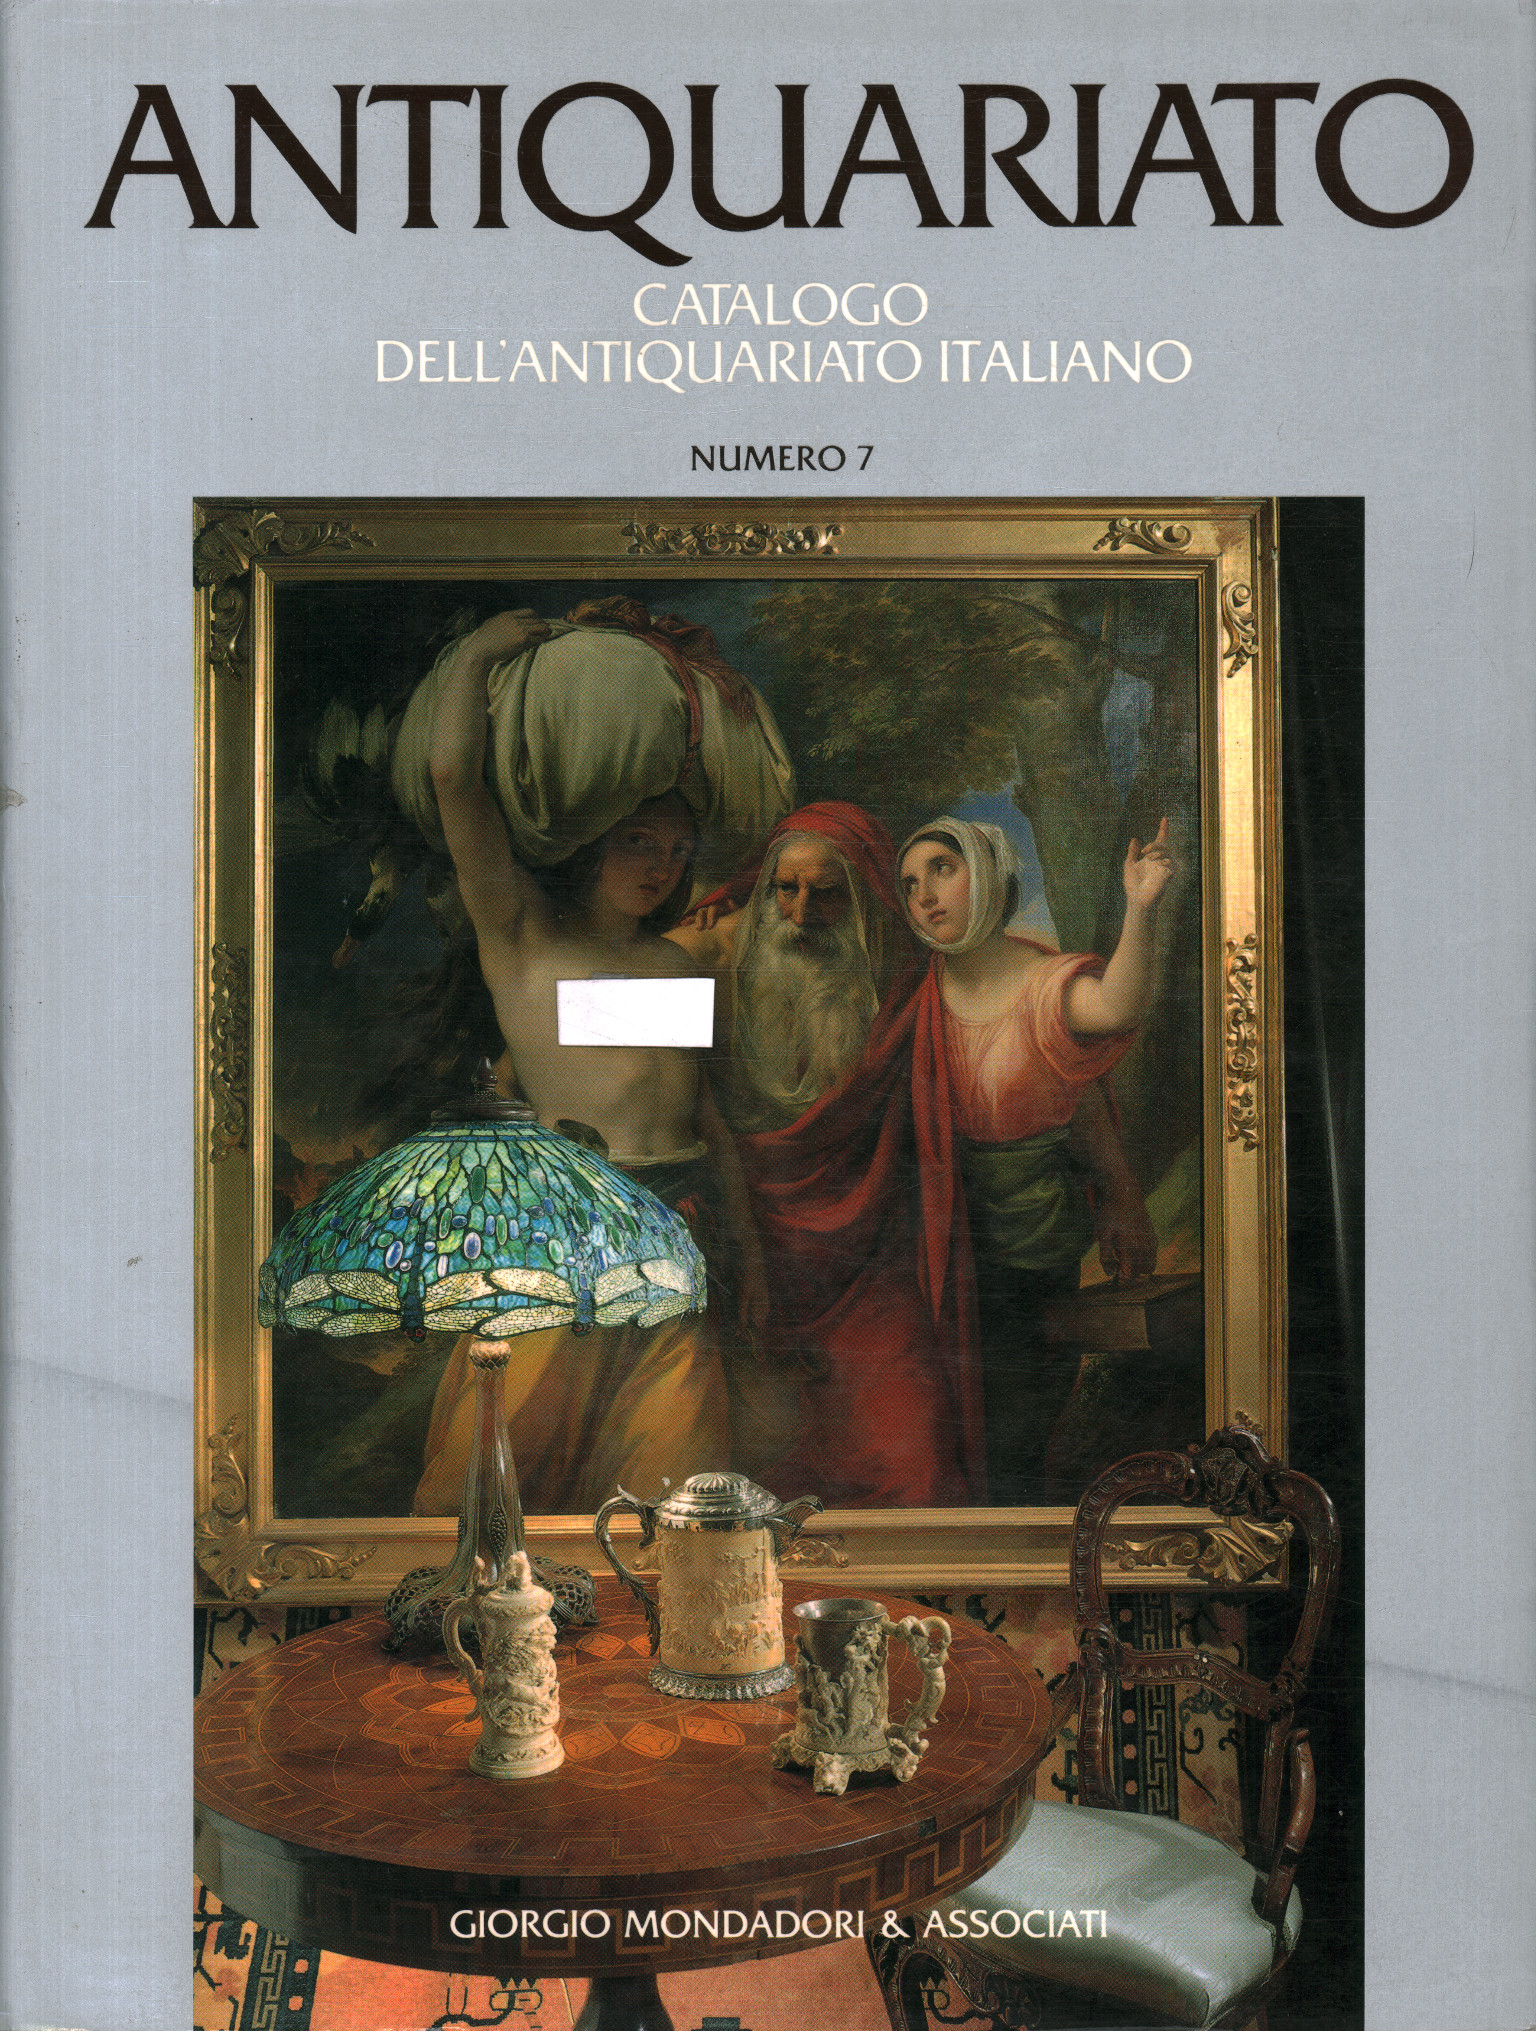 Catalog of Italian antiques